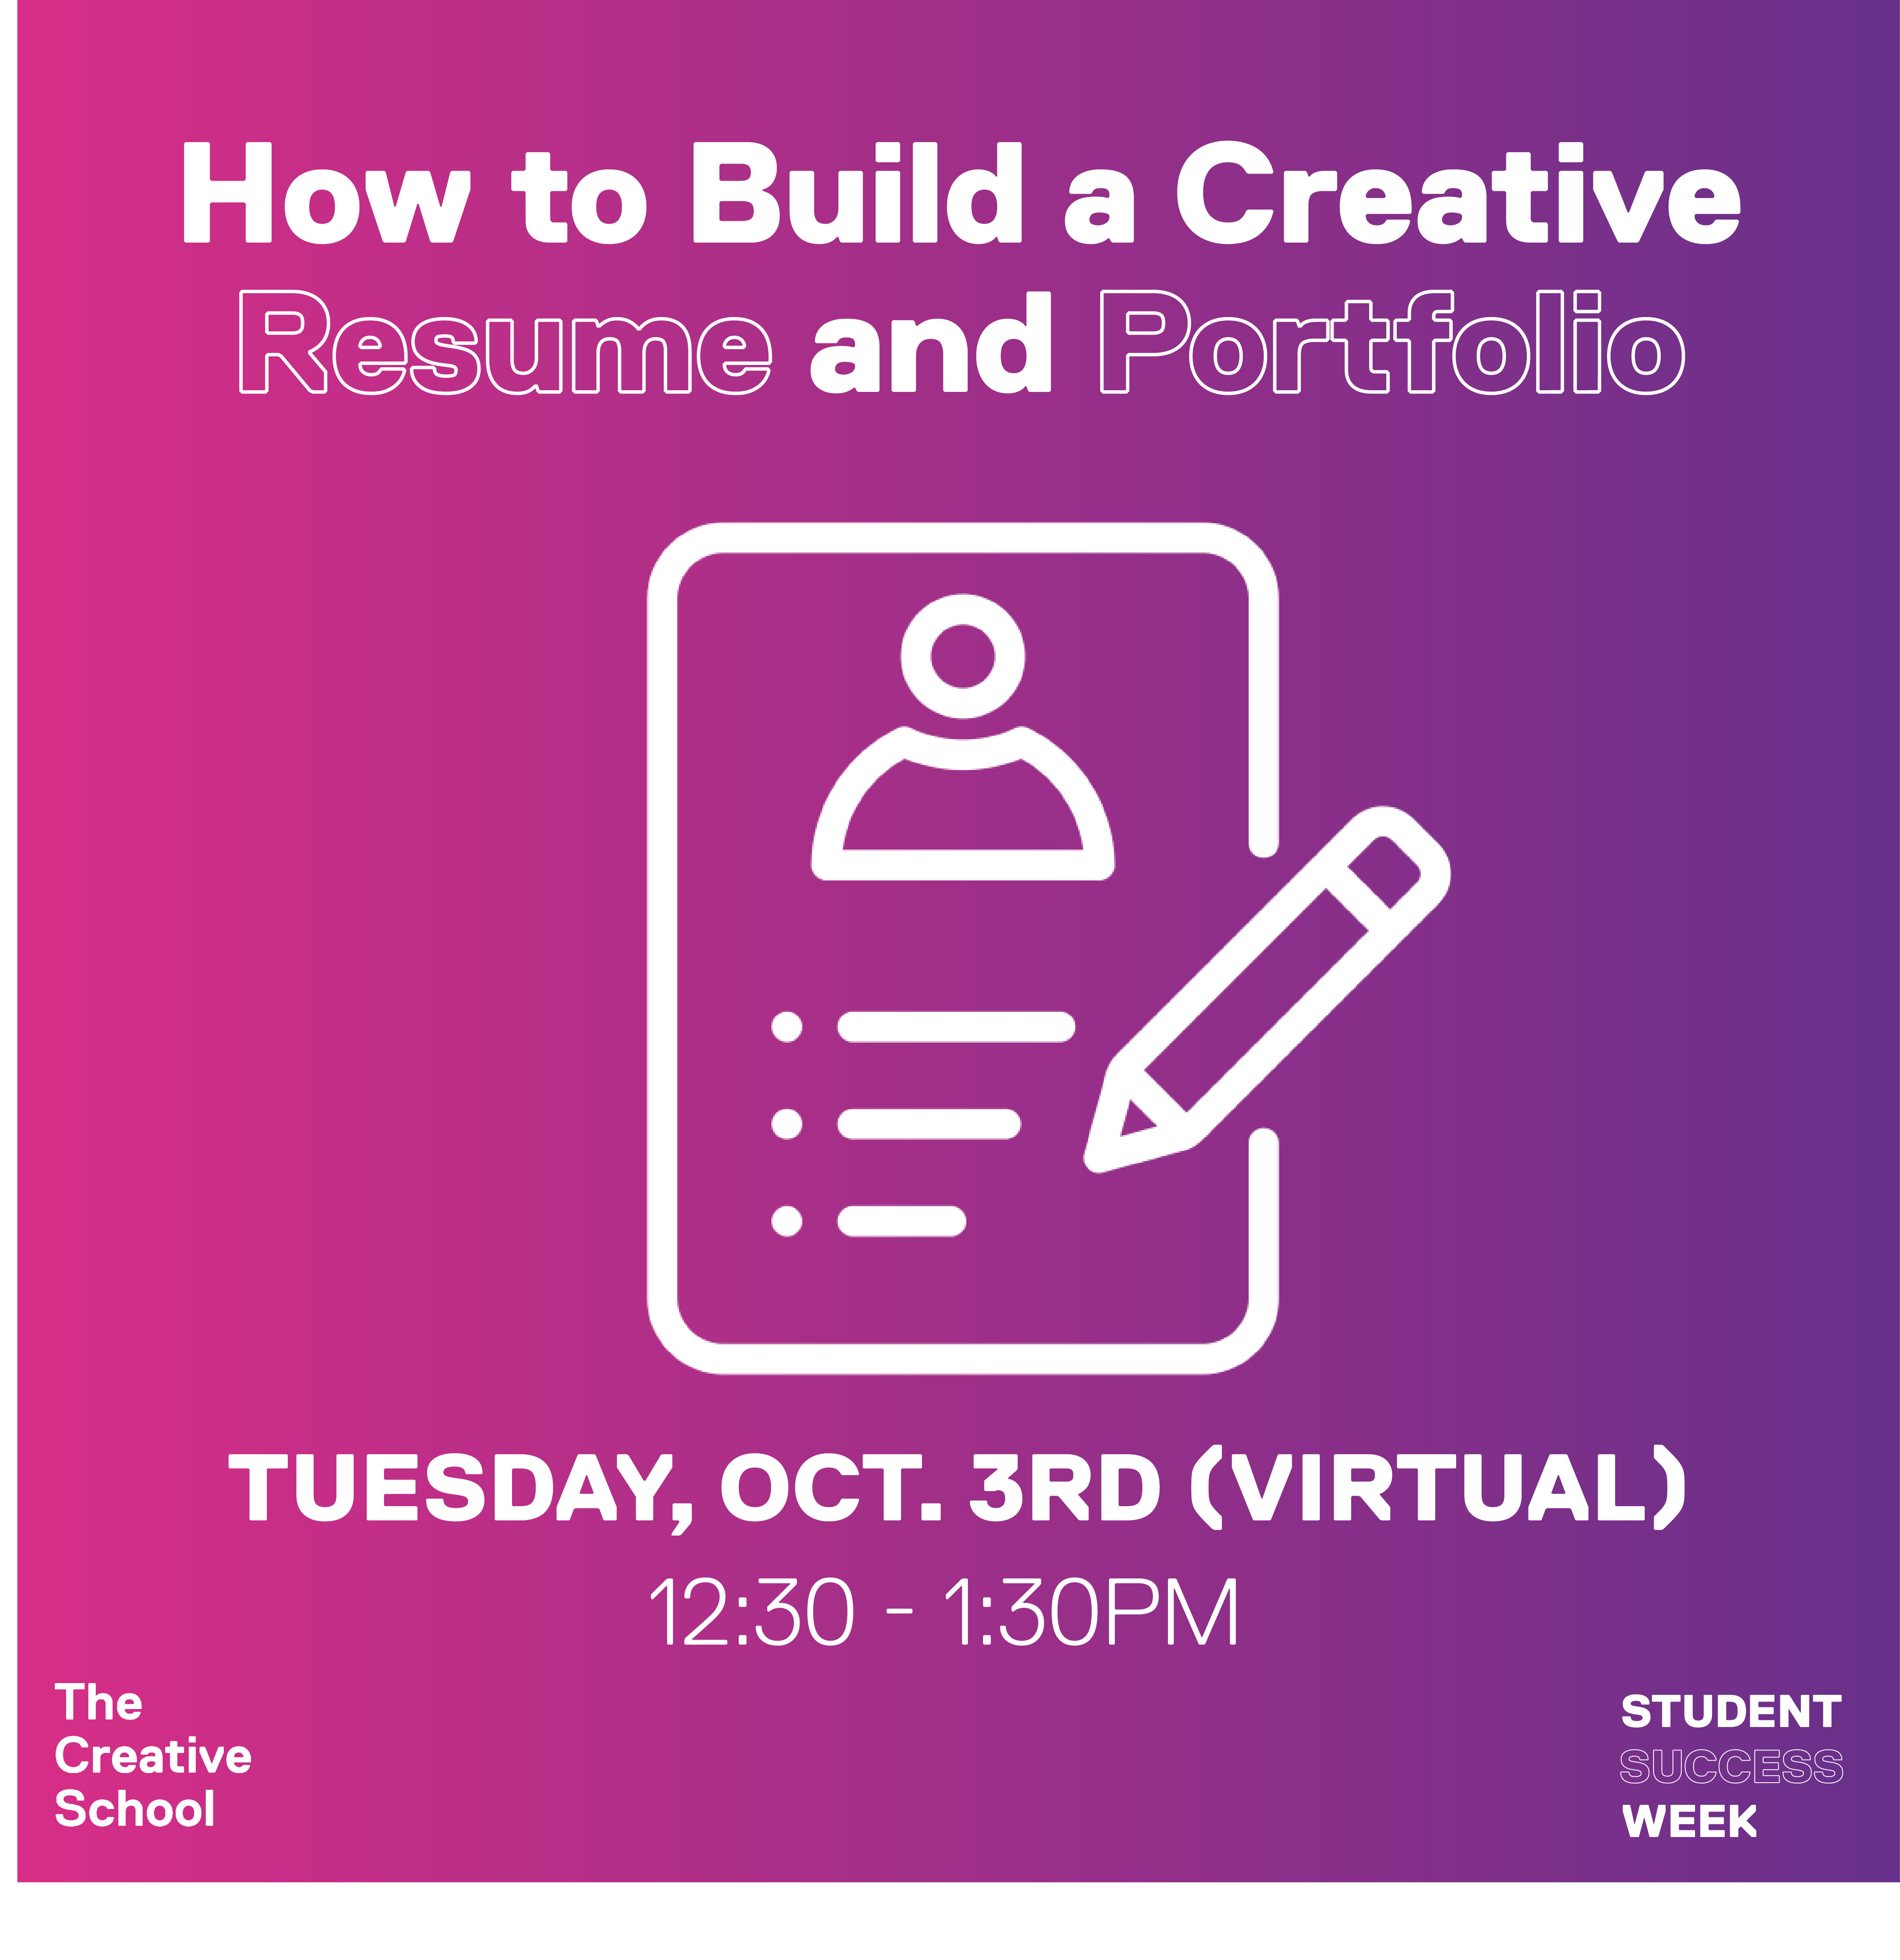 How to Build a Creative Resume and Portfolio